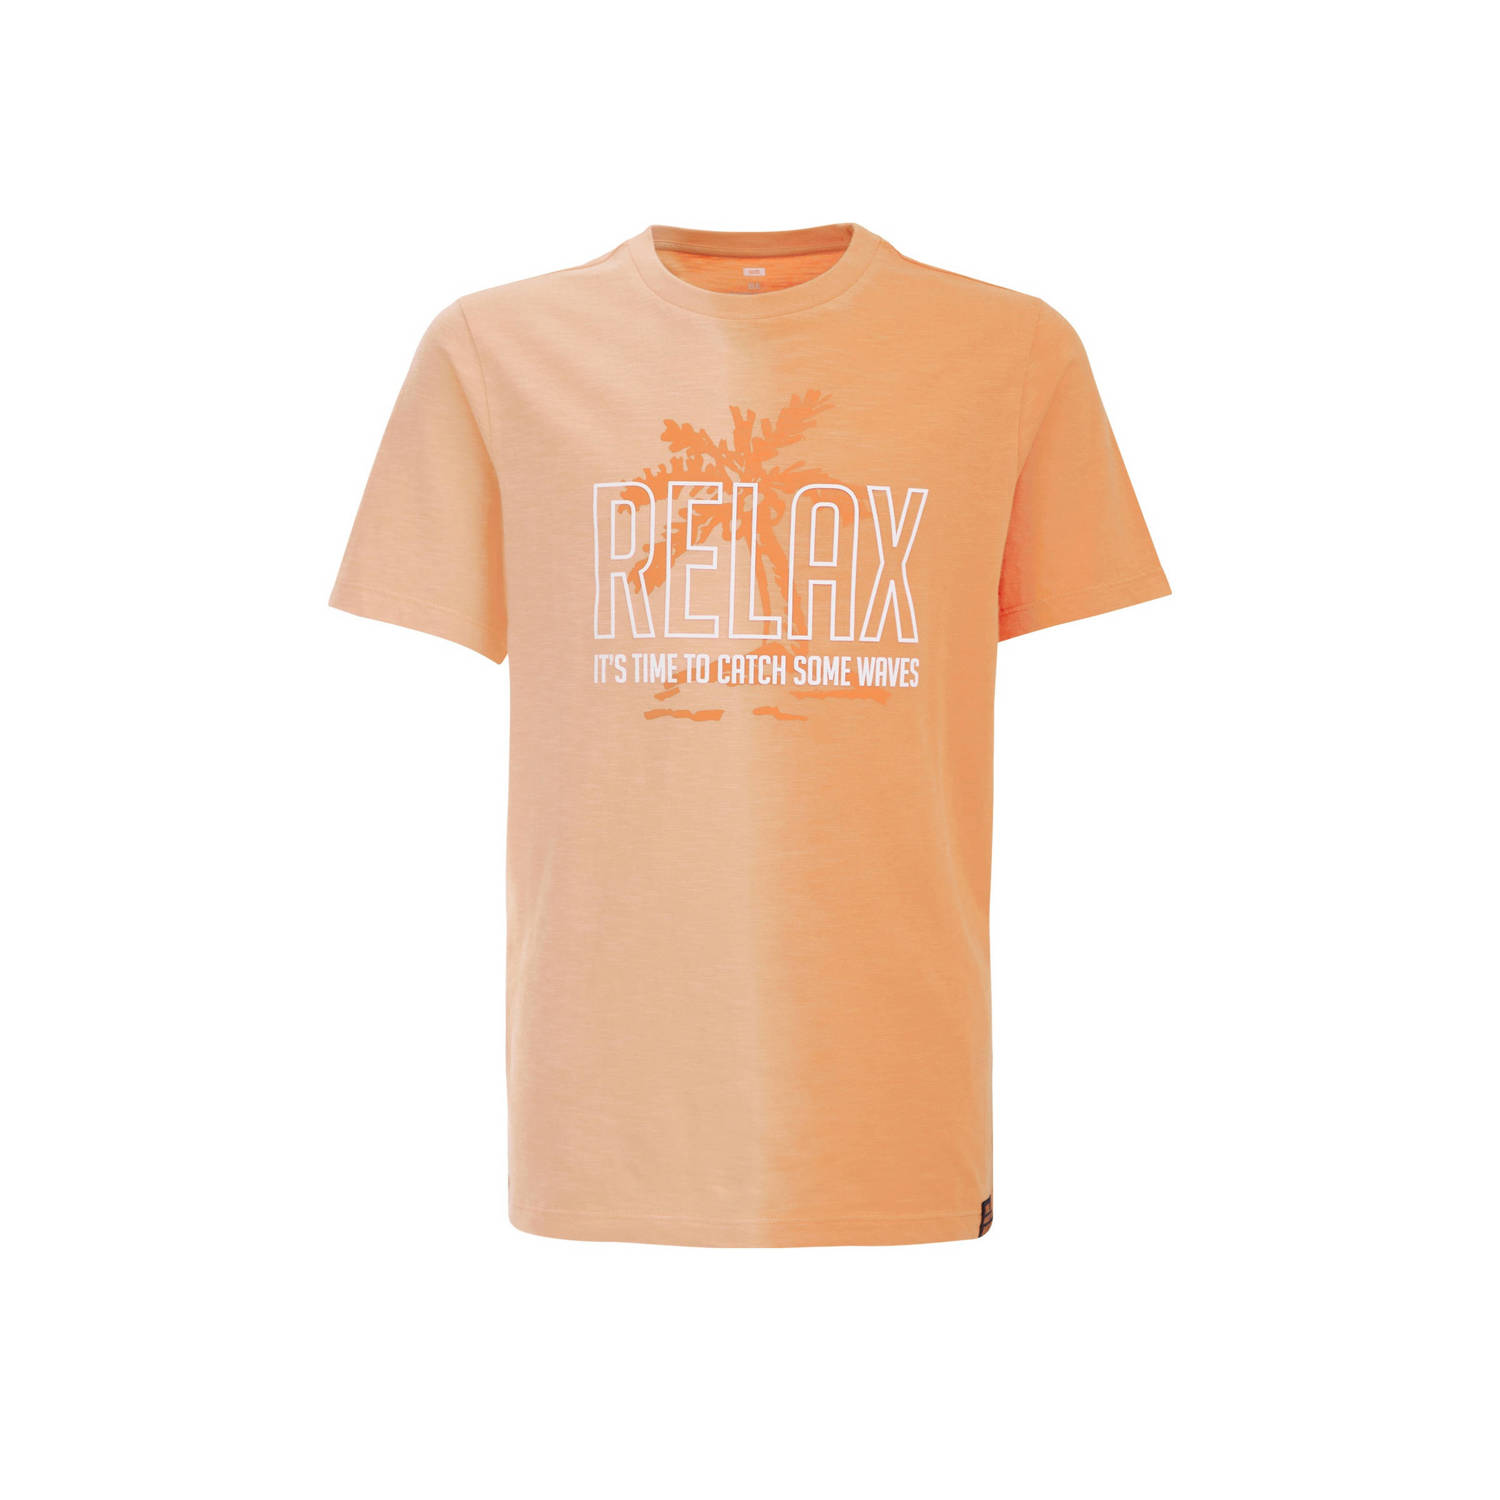 WE Fashion T-shirt met tekst oranje Jongens Katoen Ronde hals Tekst 110 116